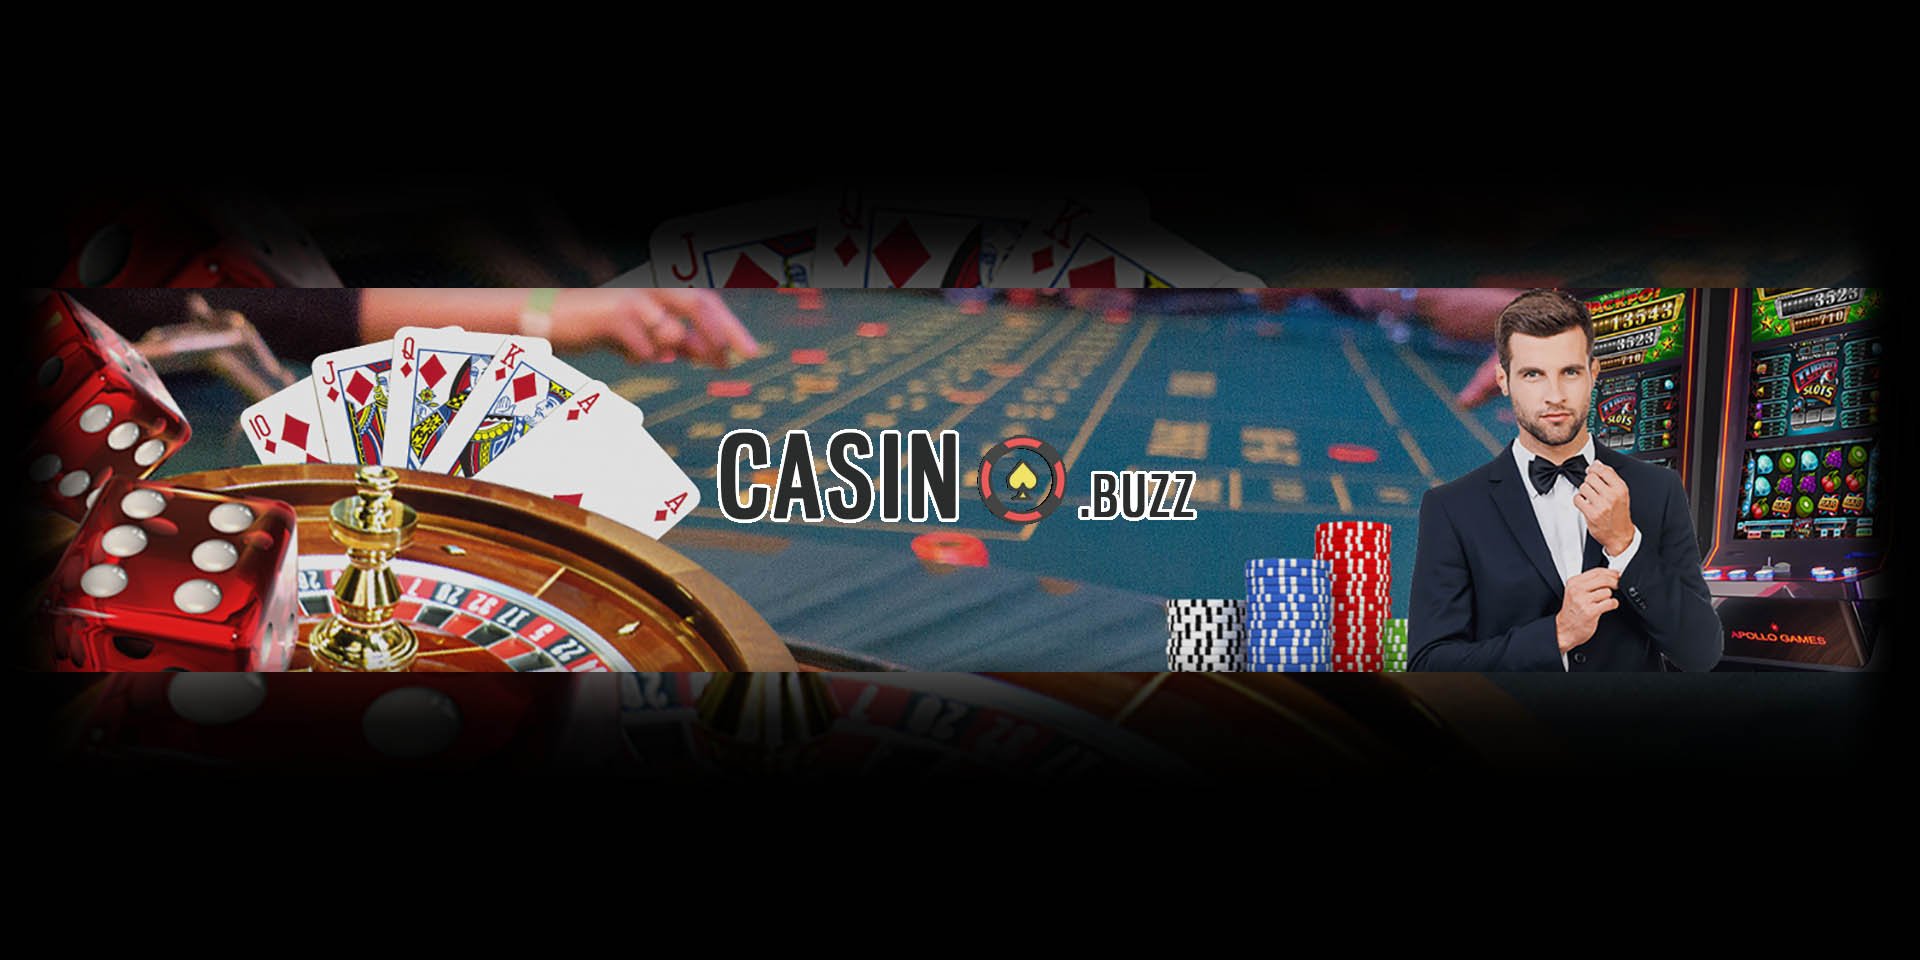 Best 50 Tips For online casino